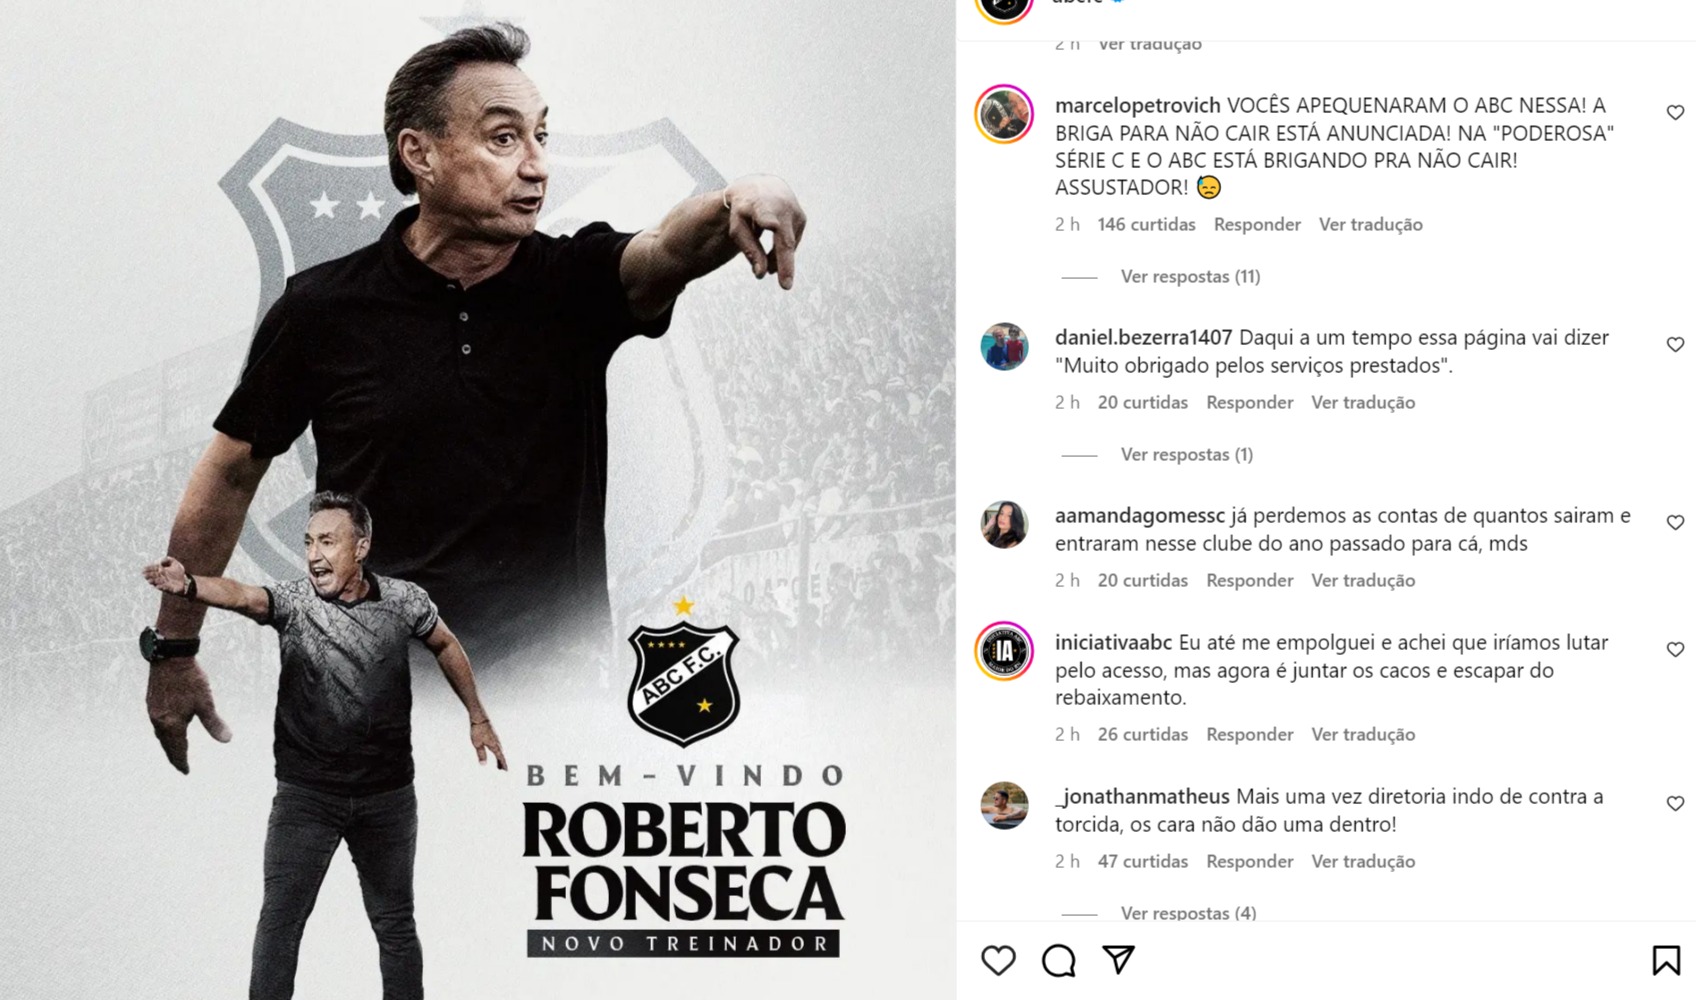 [VIDEO] ABC confirma Roberto Fonseca e torcedores protestam: "Rumo à Série D"